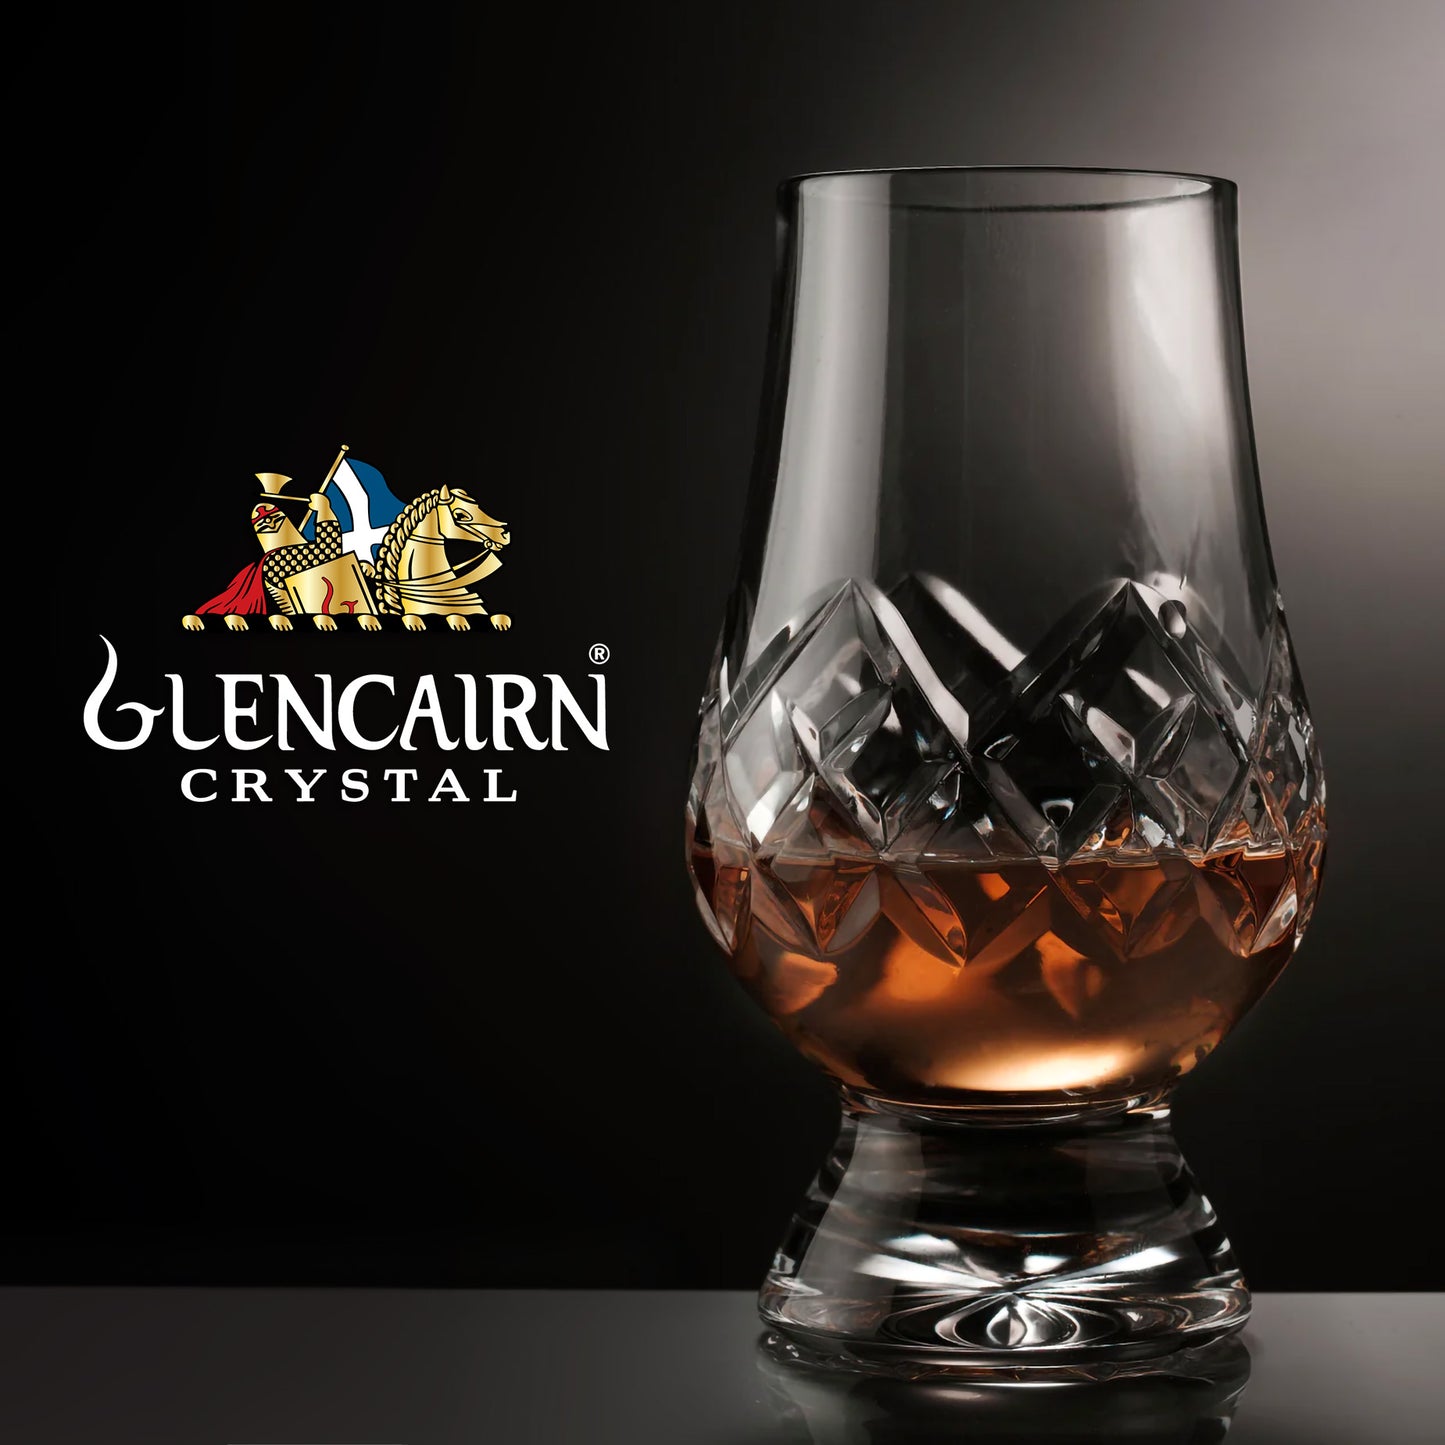 The Hand-cut Crystal Glencairn Glass